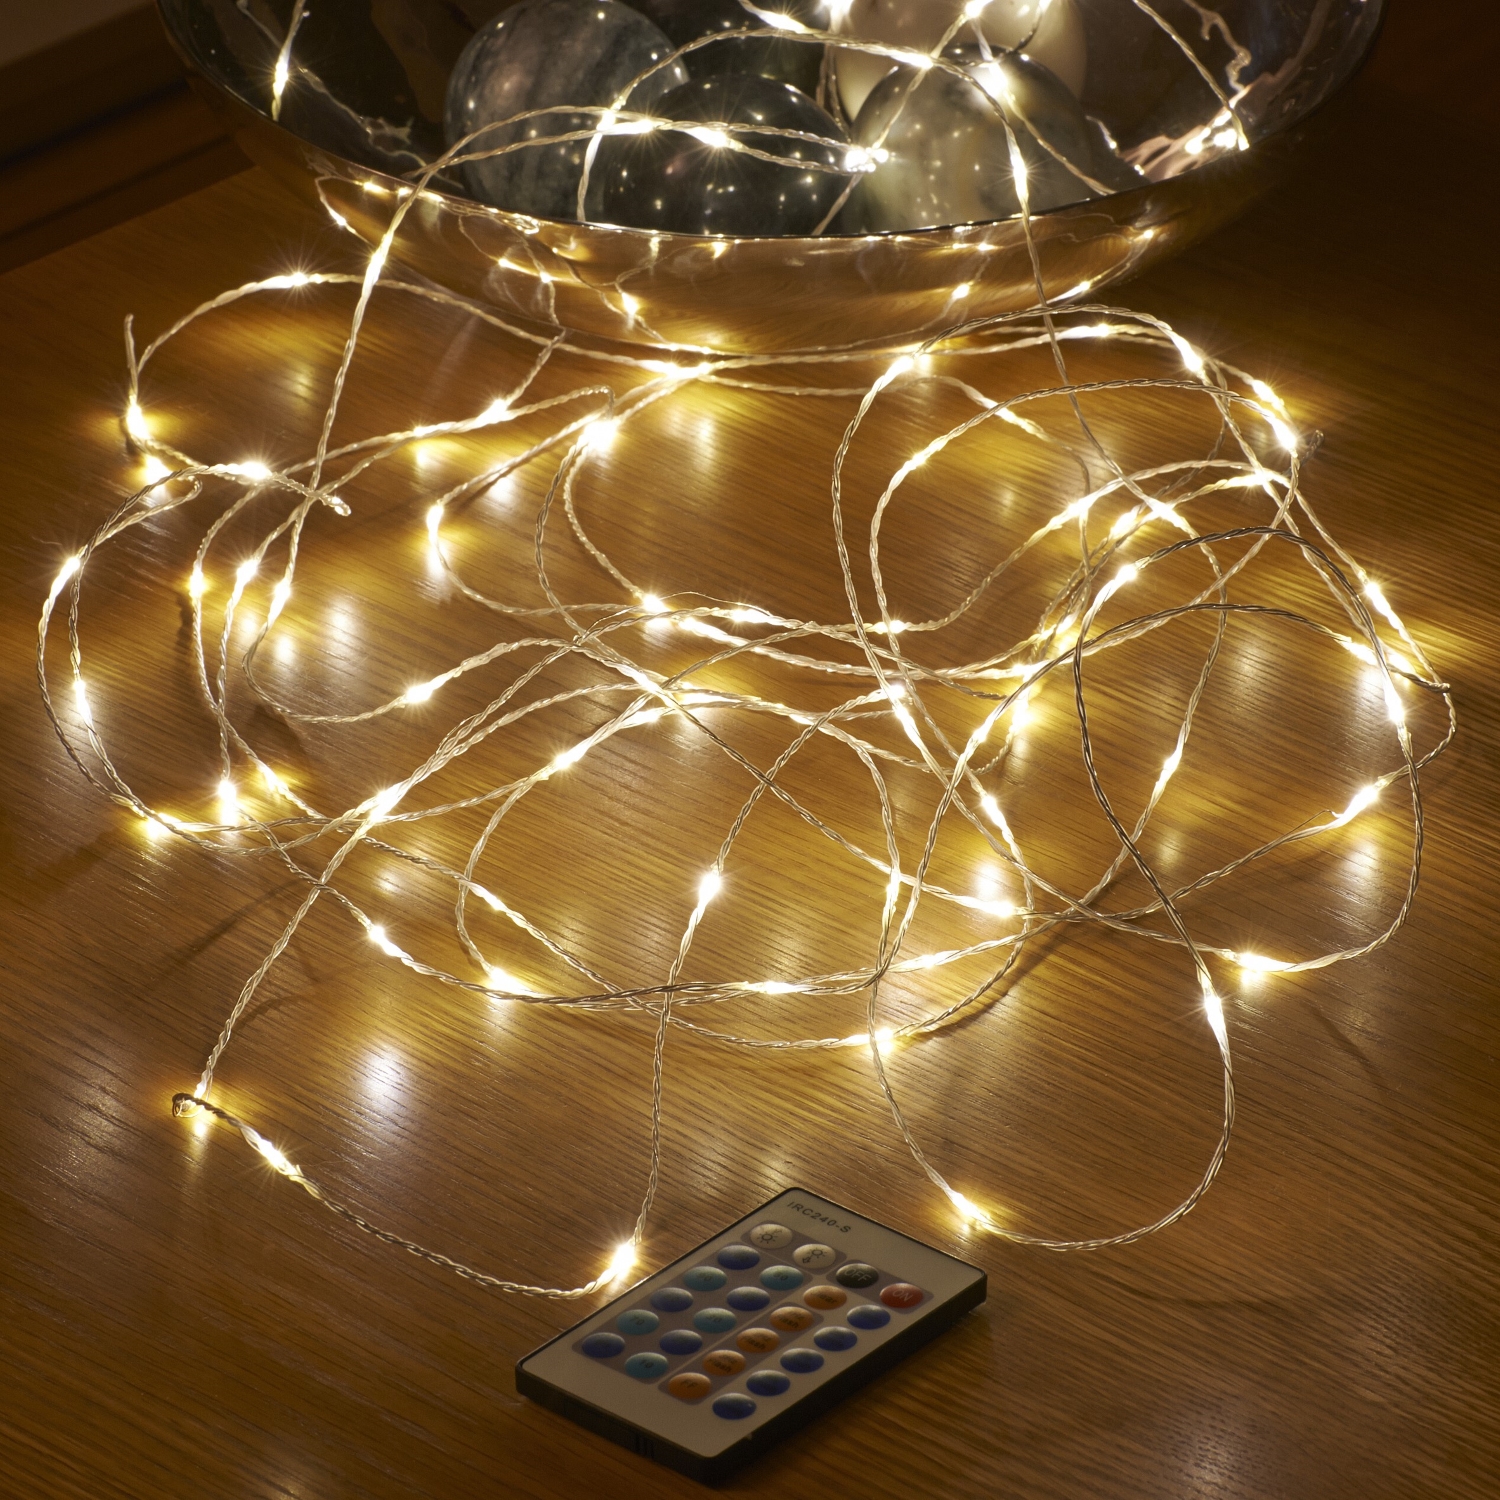 Auraglow 10m Remote Control Plug In 100 Micro LED String Lights | eBay